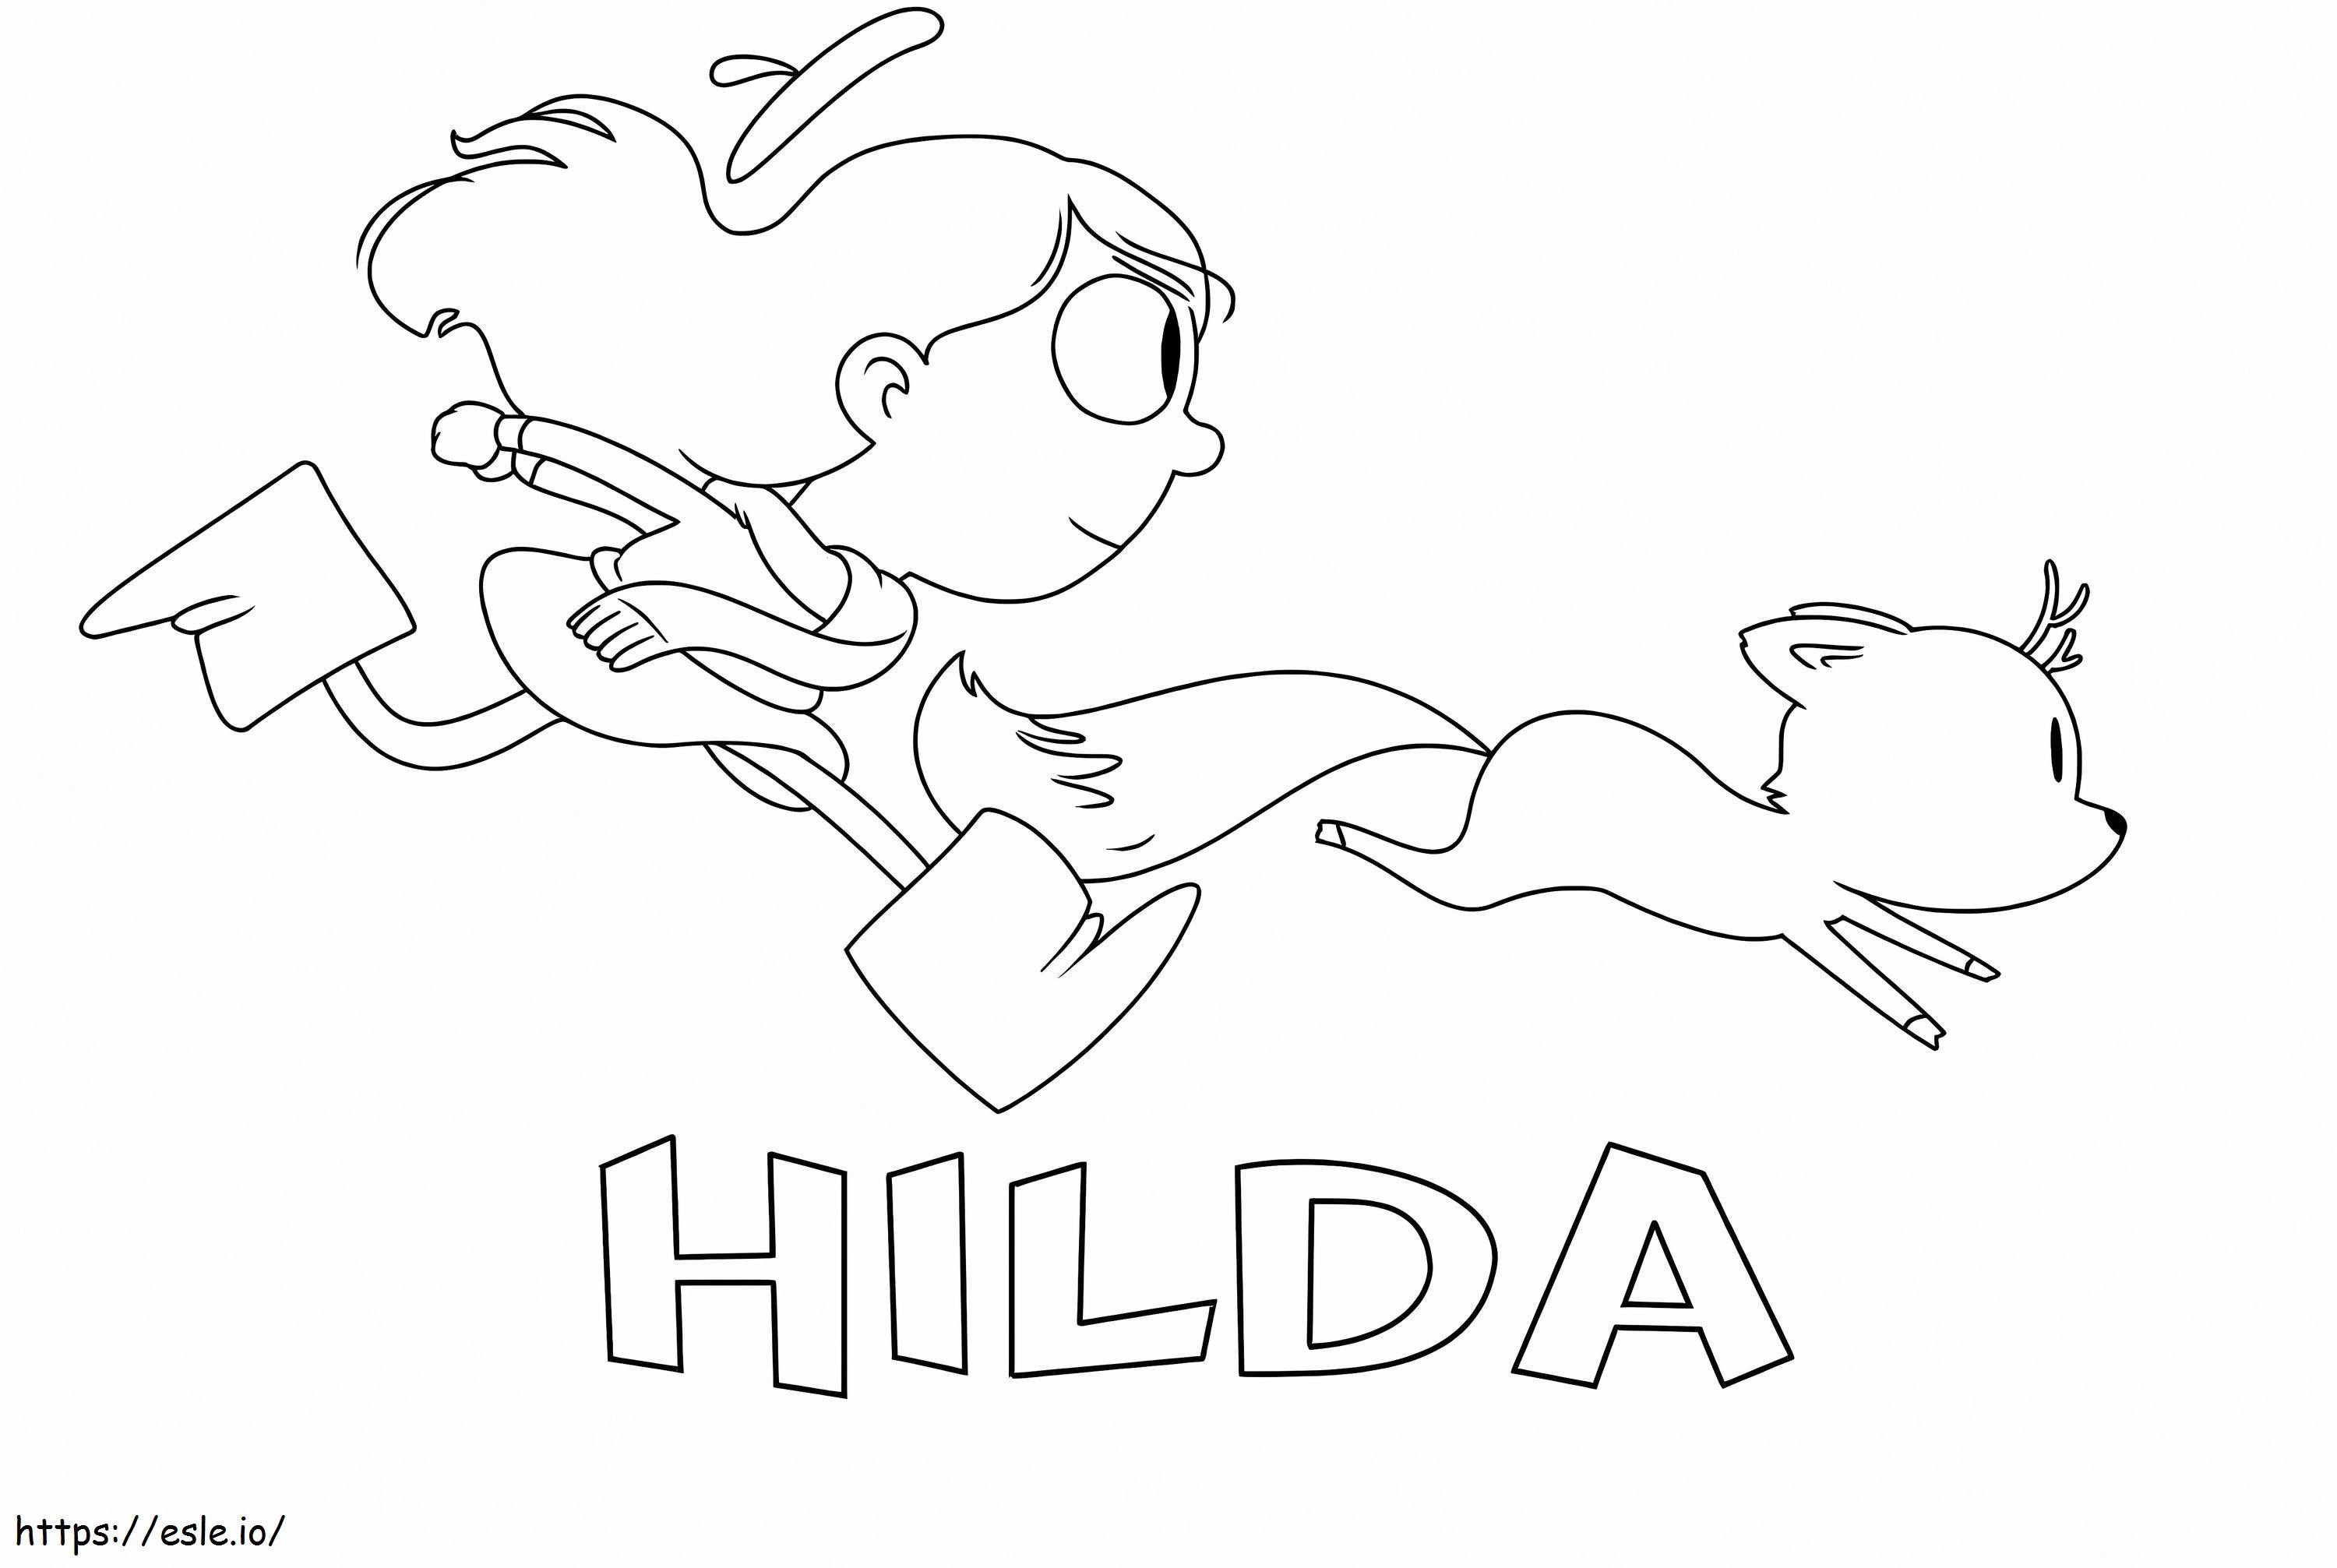 Hilda și crenguța alergând de colorat